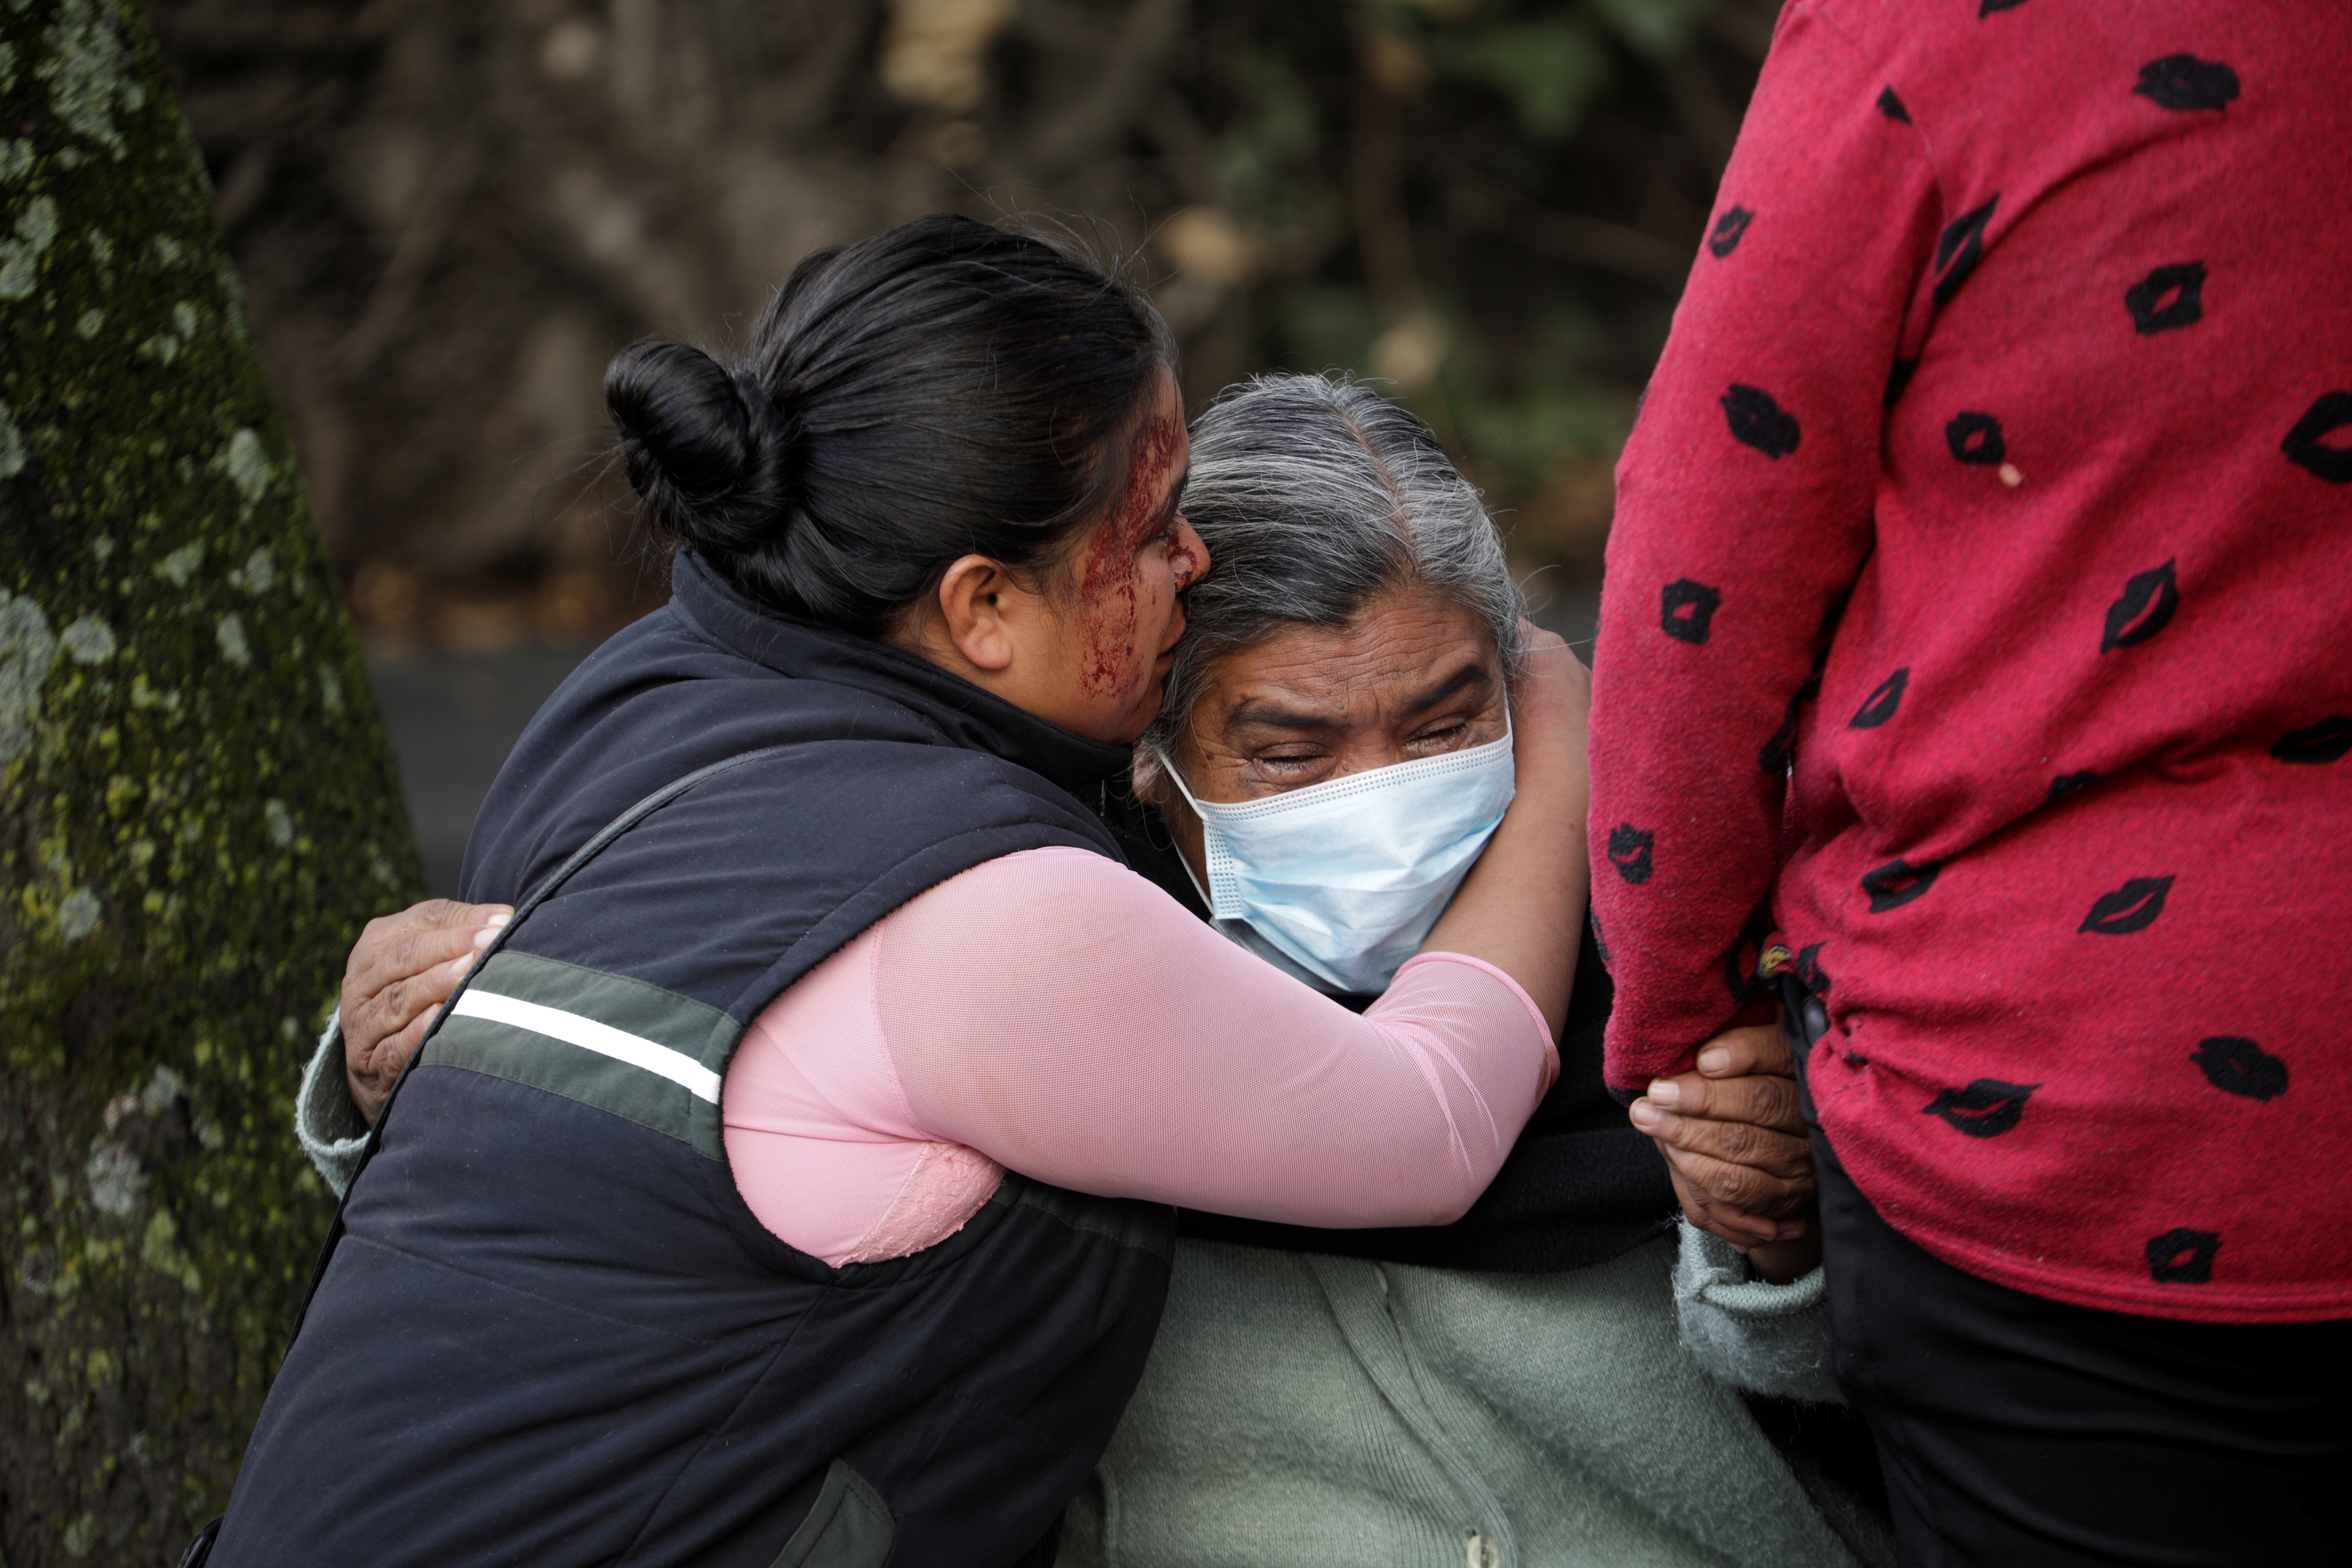 Dos mujeres, ajenas a los hechos, fueron víctimas del fuego cruzado, una de ellas perdió la vida y la otra está herida (REUTERS/Luis Cortes)